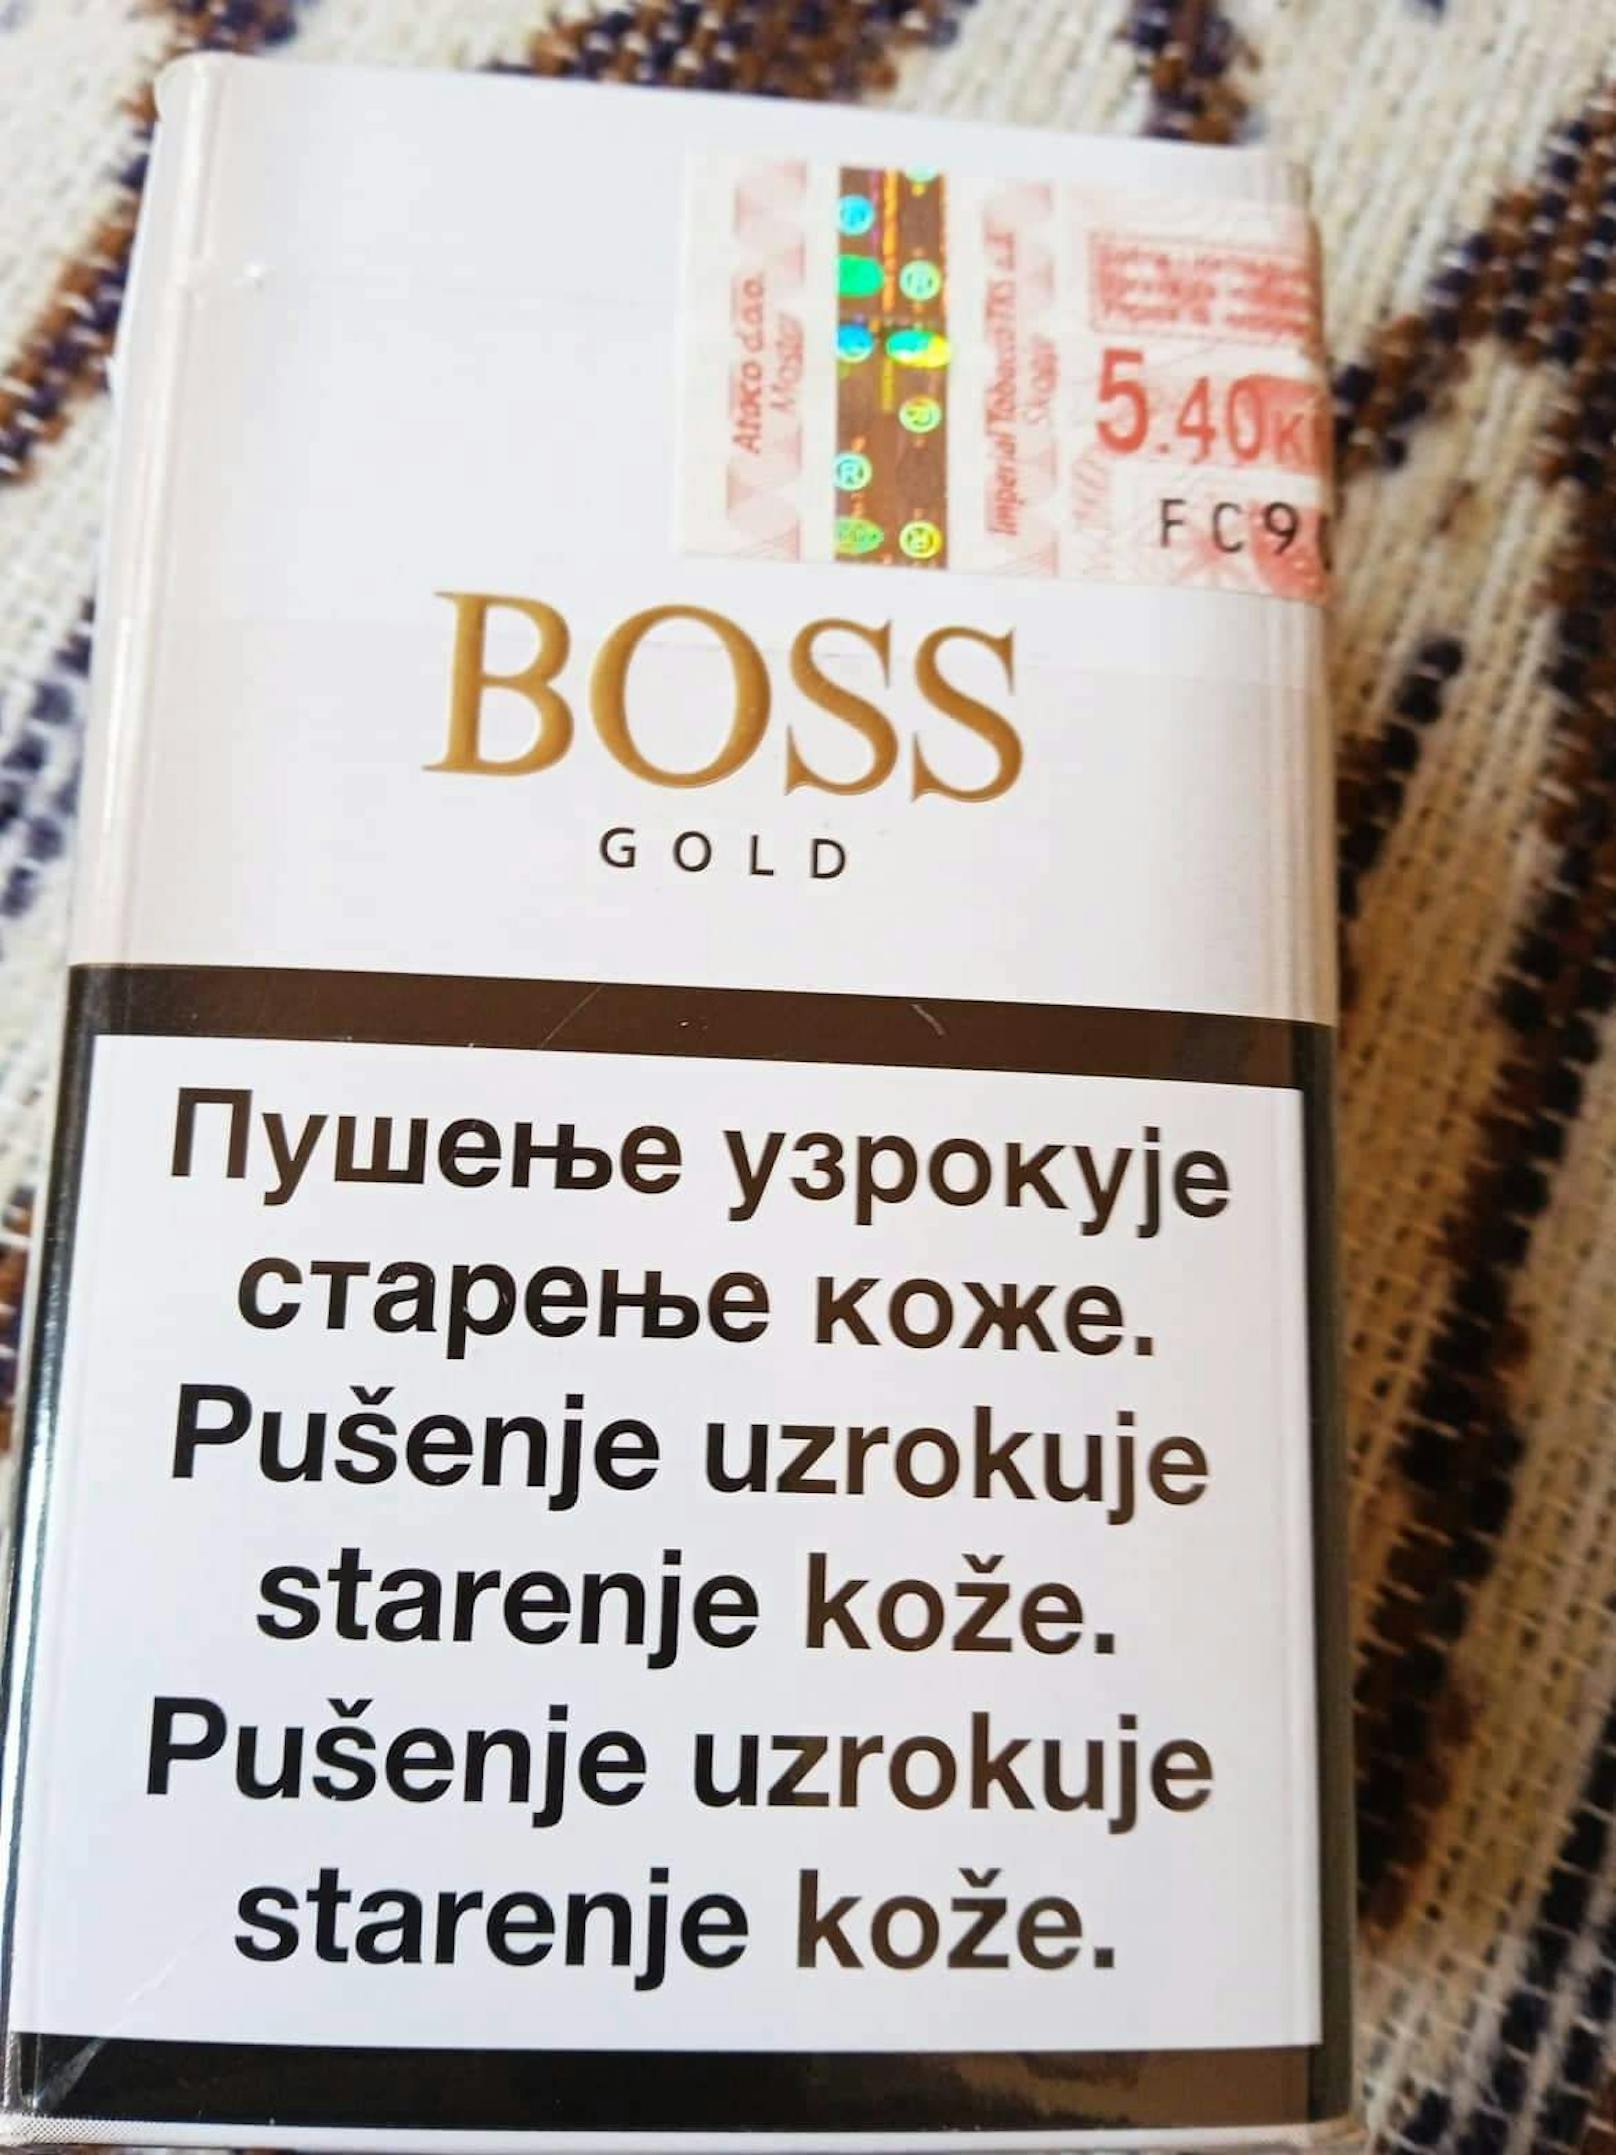 Boss Gold - Zigaretten aus Bosnien-Herzigowina kosten 2,70 Euro.